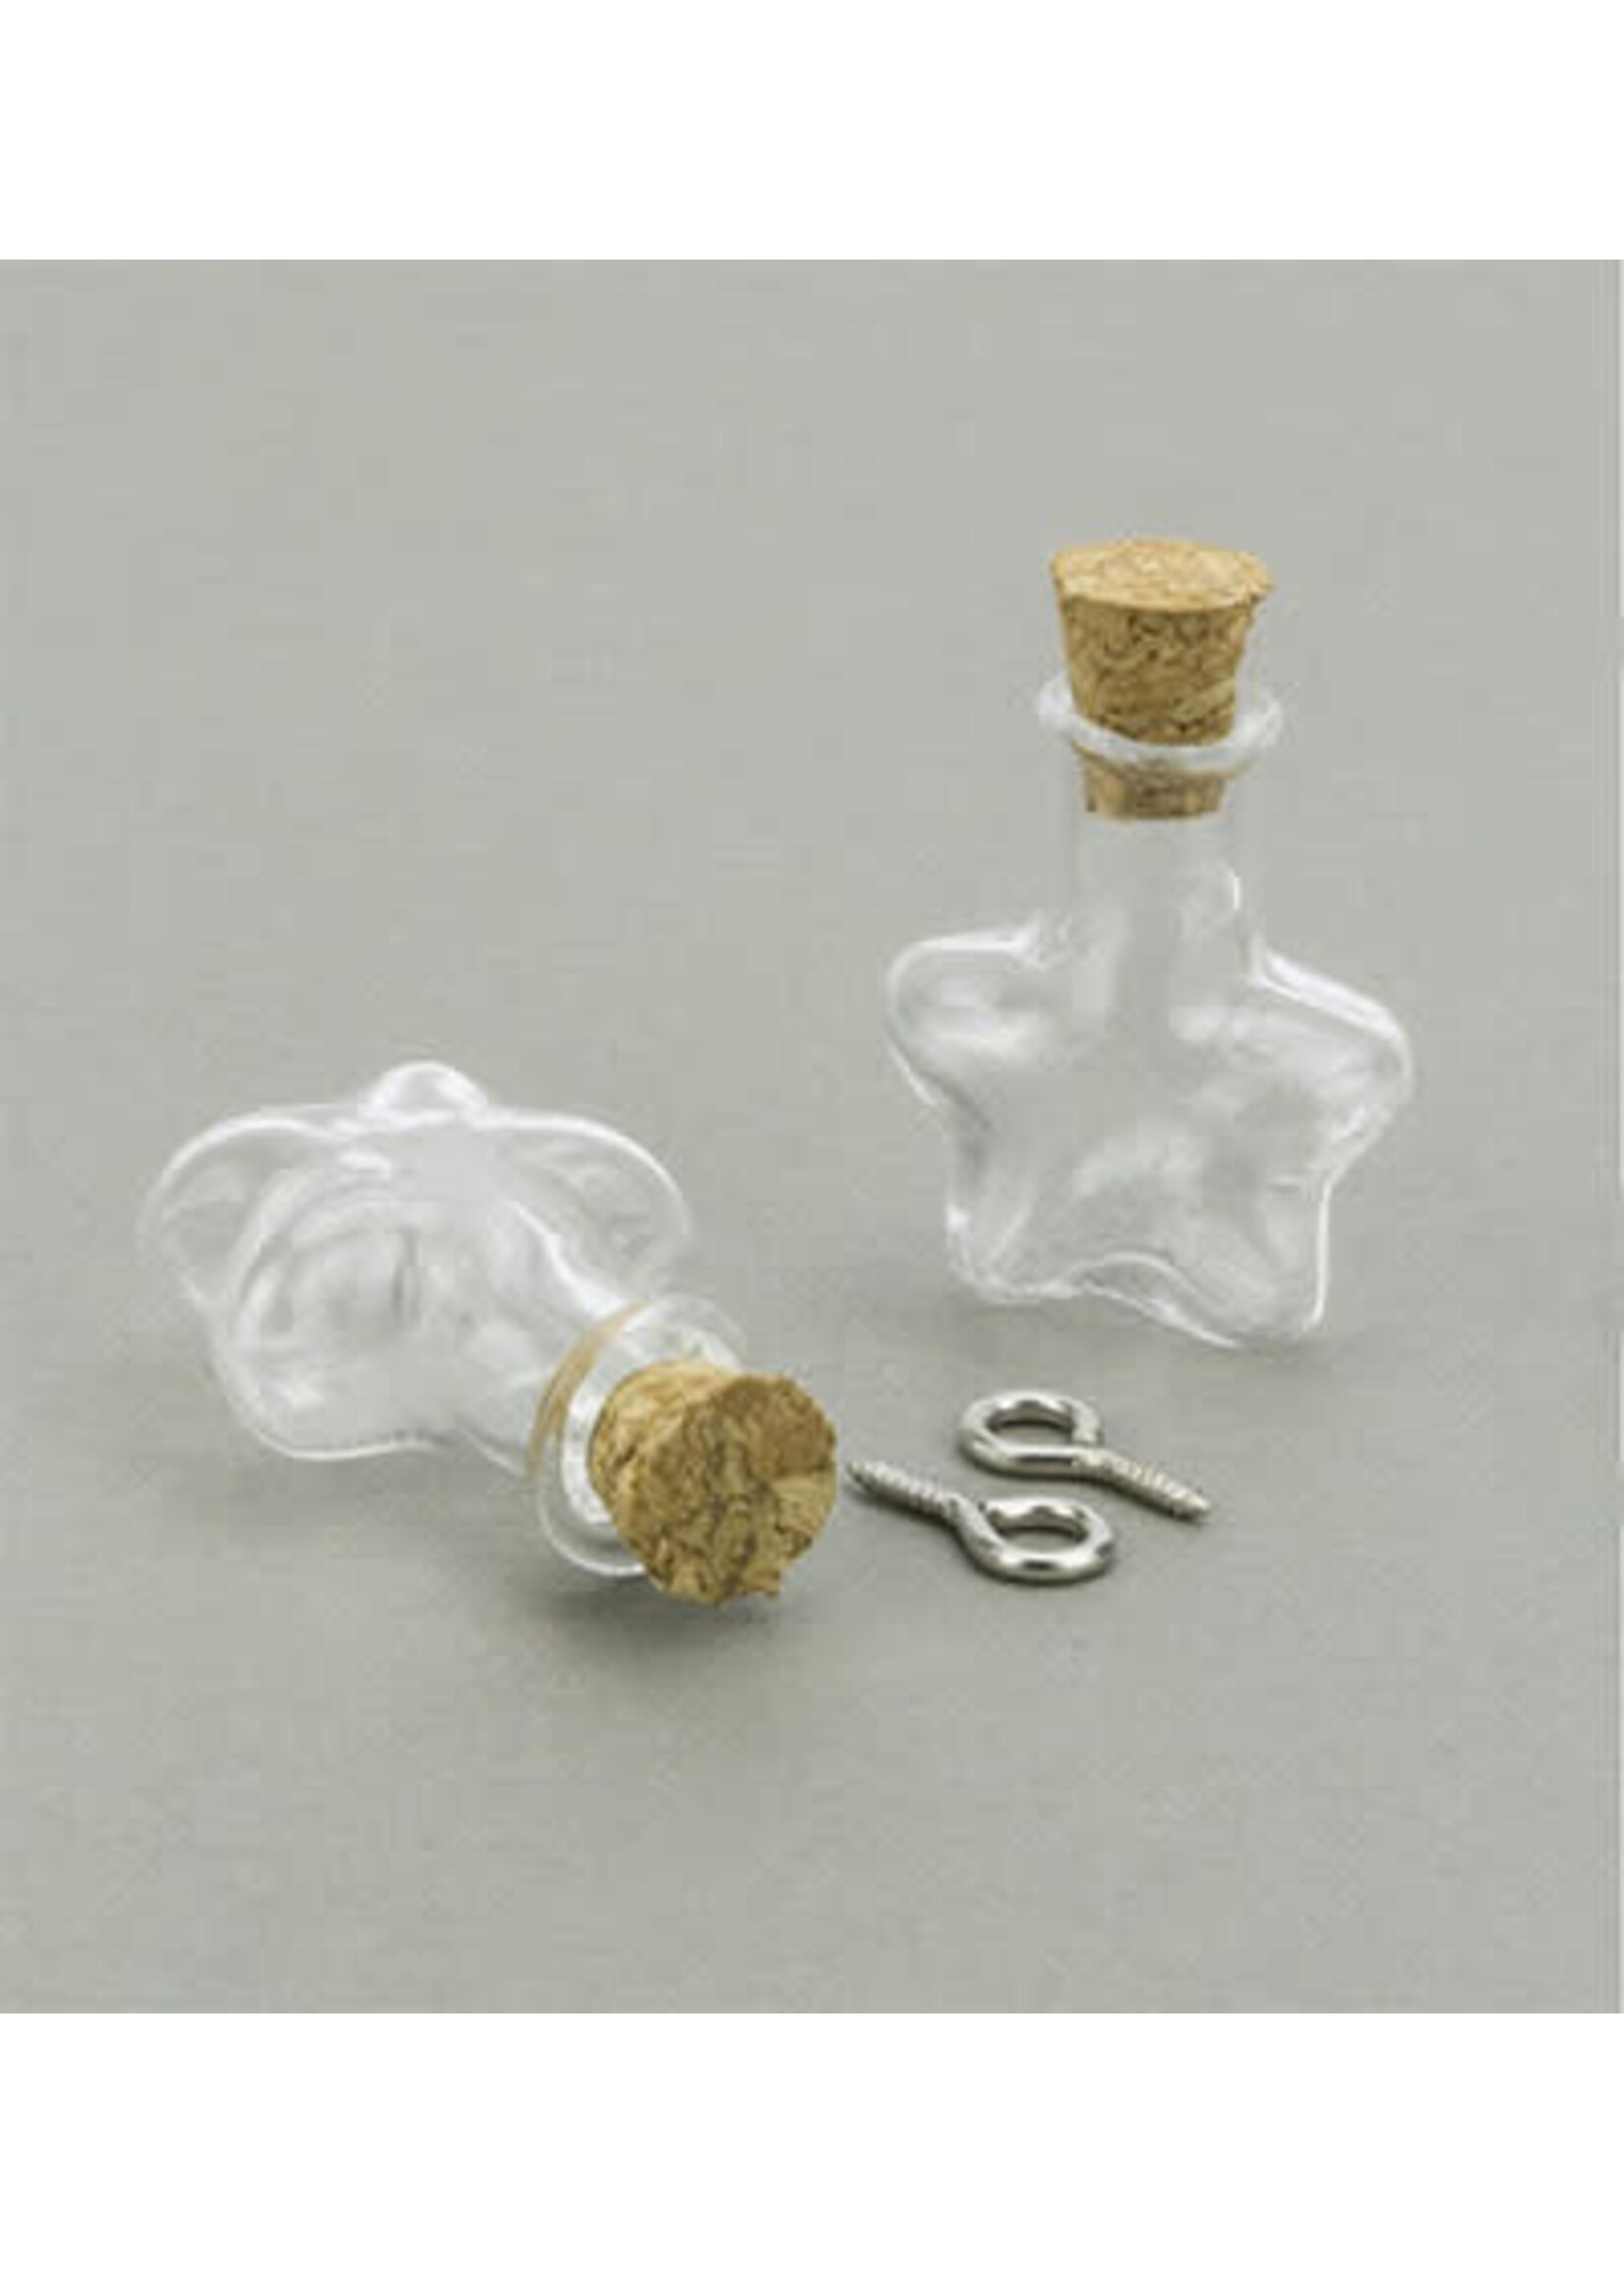 12423-2315 - Mini Glass Bottles, with cork & screw hanger, star